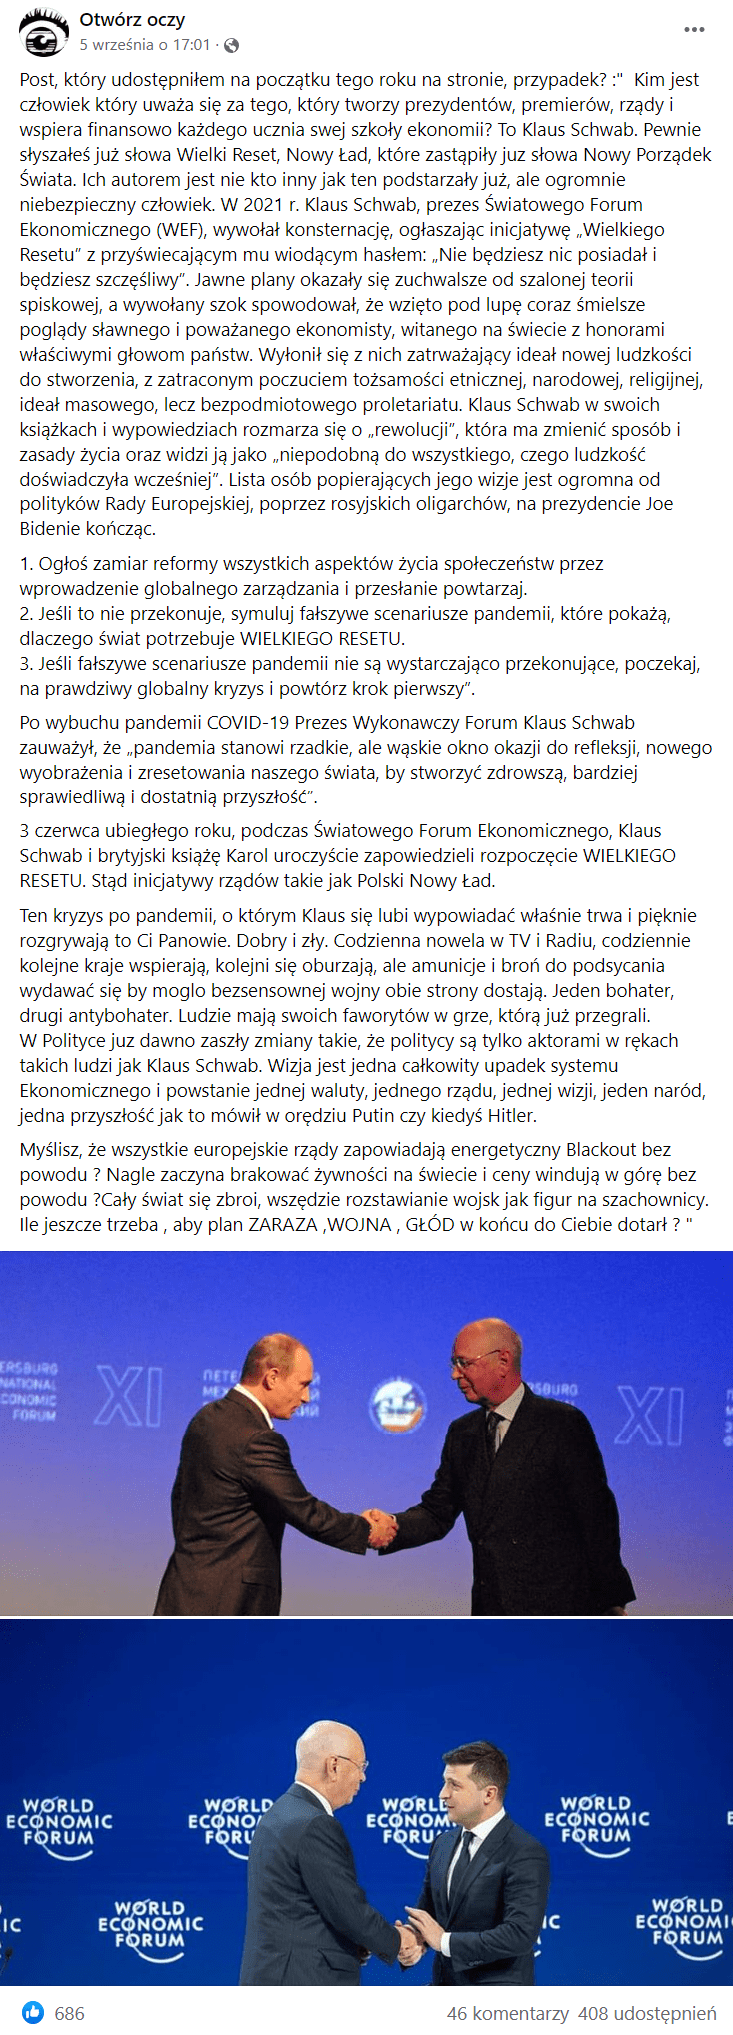 Zrzut ekranu wpisu na Facebooku, w którym opisano, jakoby Klaus Schwab dążył do zniesienia własności prywatnej i pogłębiania konfliktów na świecie. Całość zobrazowano zdjęciami Klausa Schwaba z Władimirem Putinem oraz Wołodymyrem Zełeńskim.